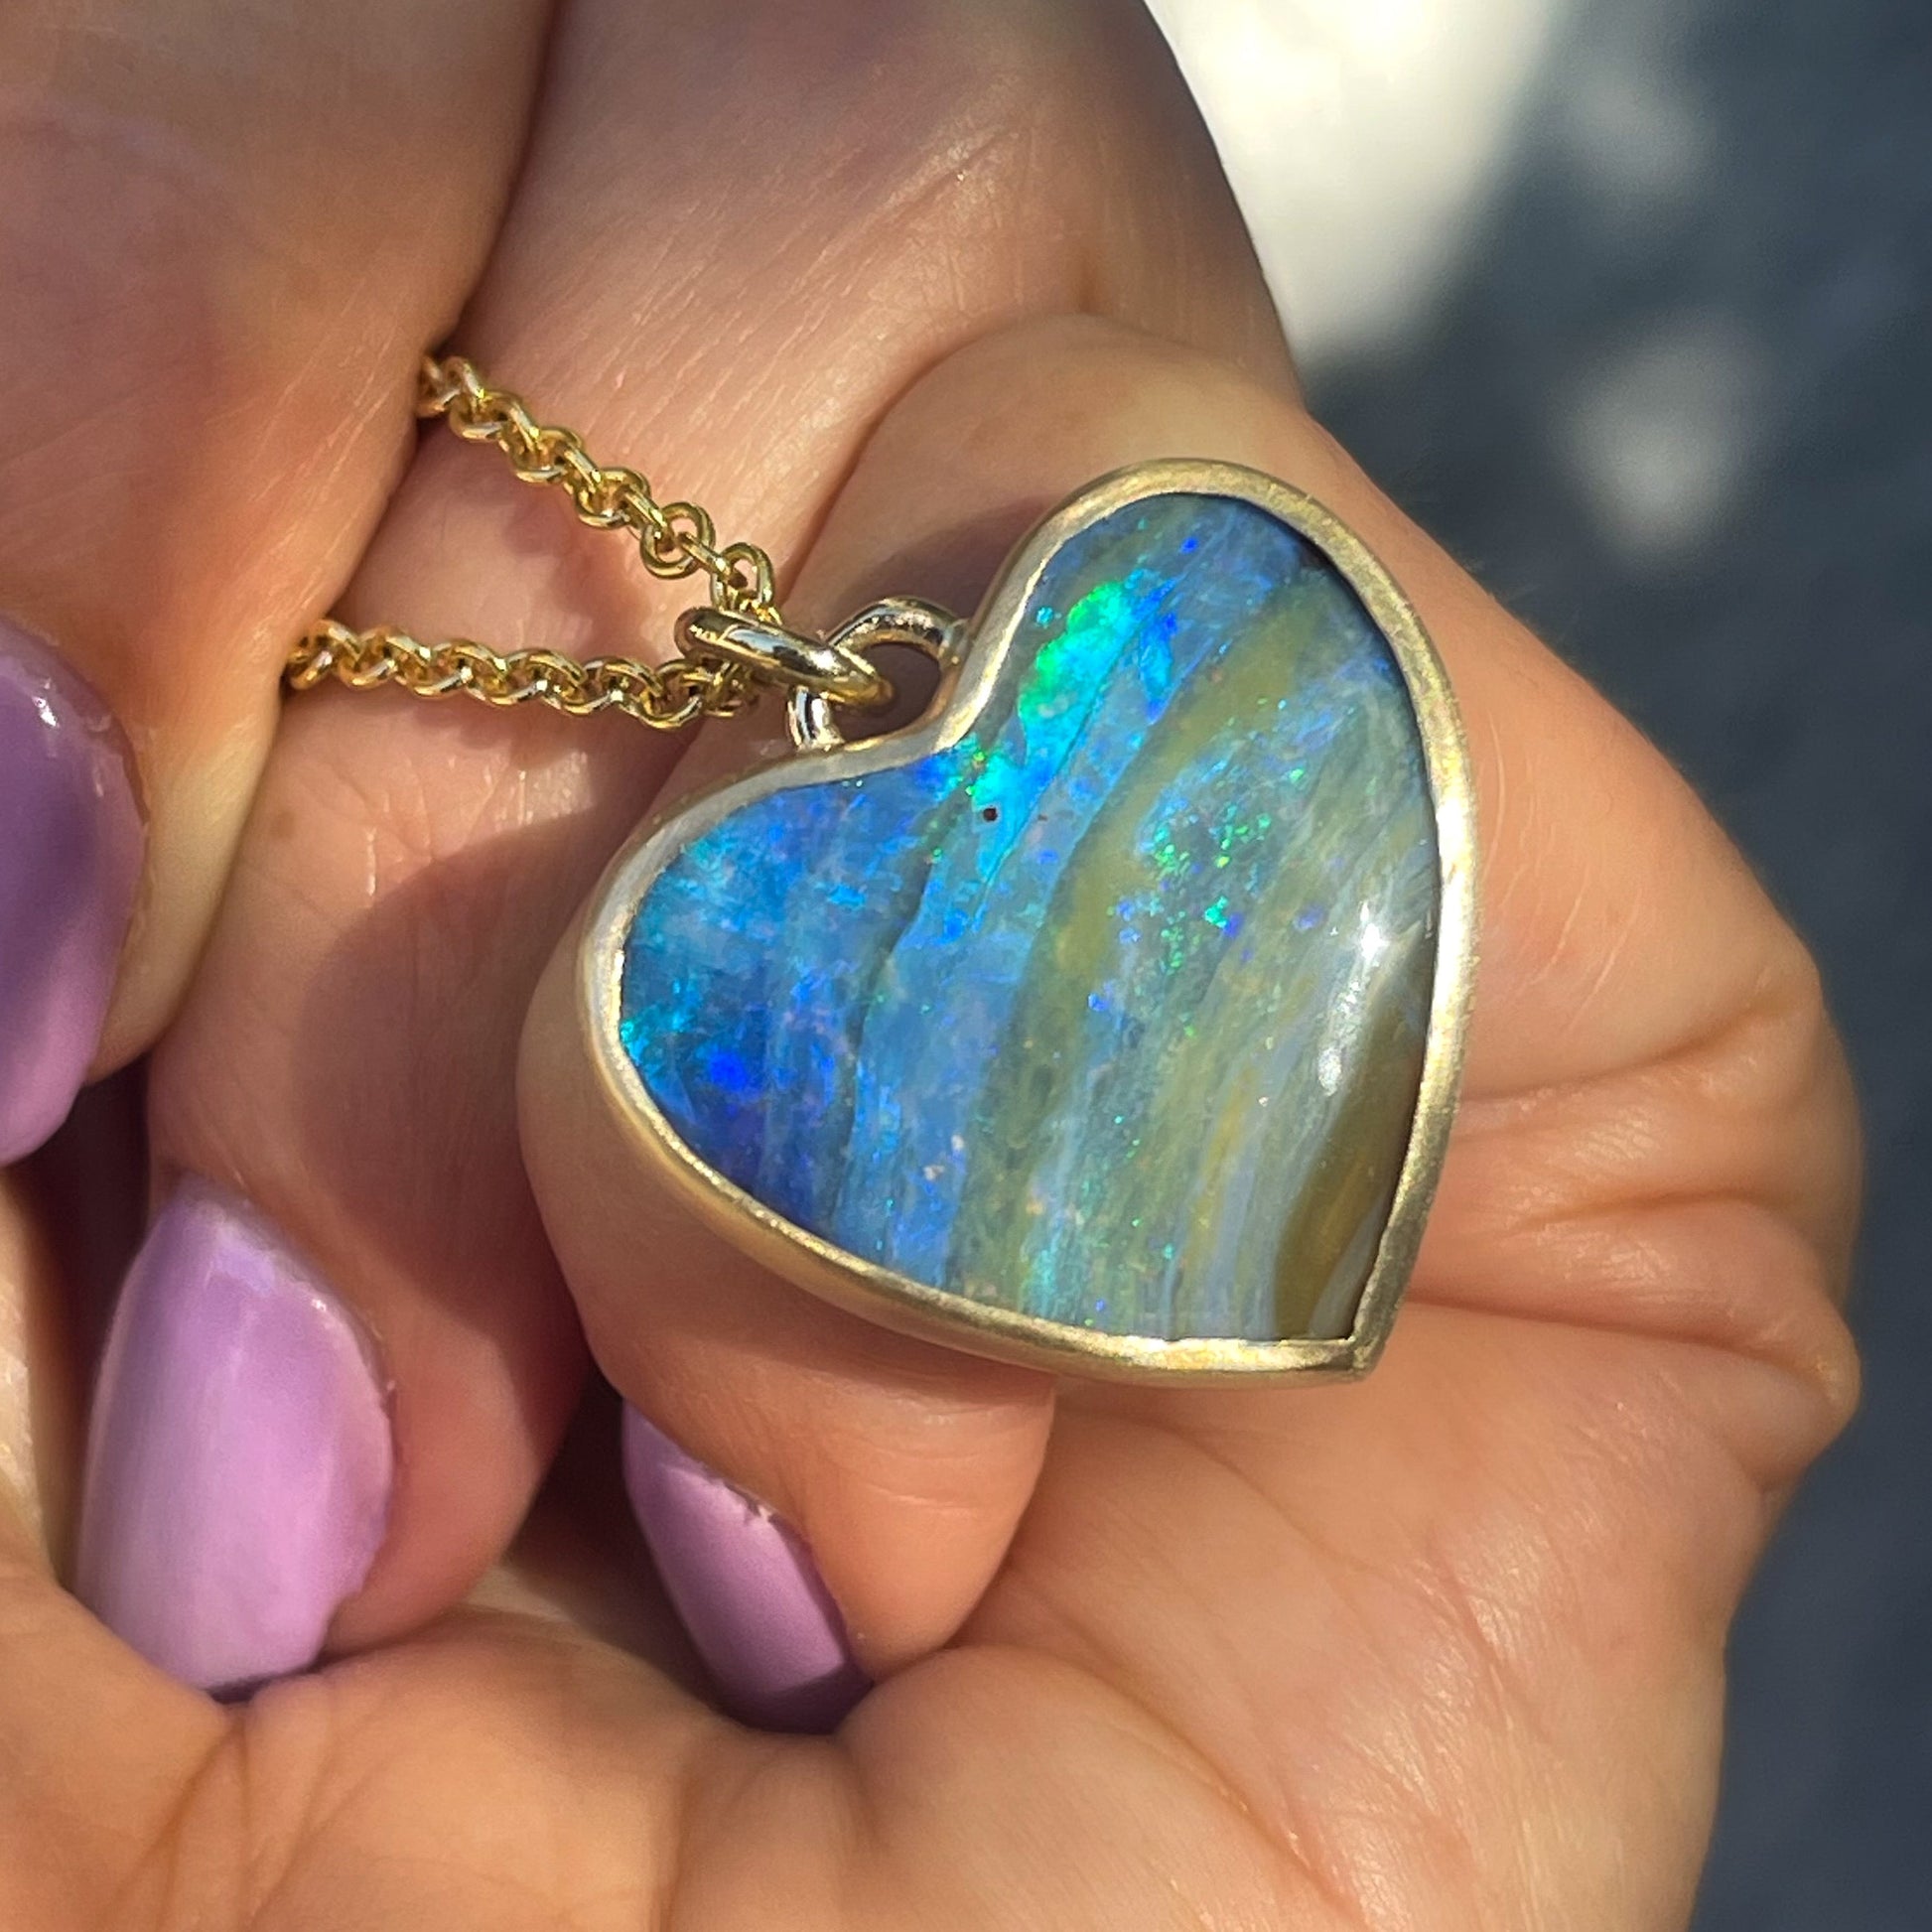 An Australian Opal Necklace by NIXIN Jewelry with a bezel set opal heart.